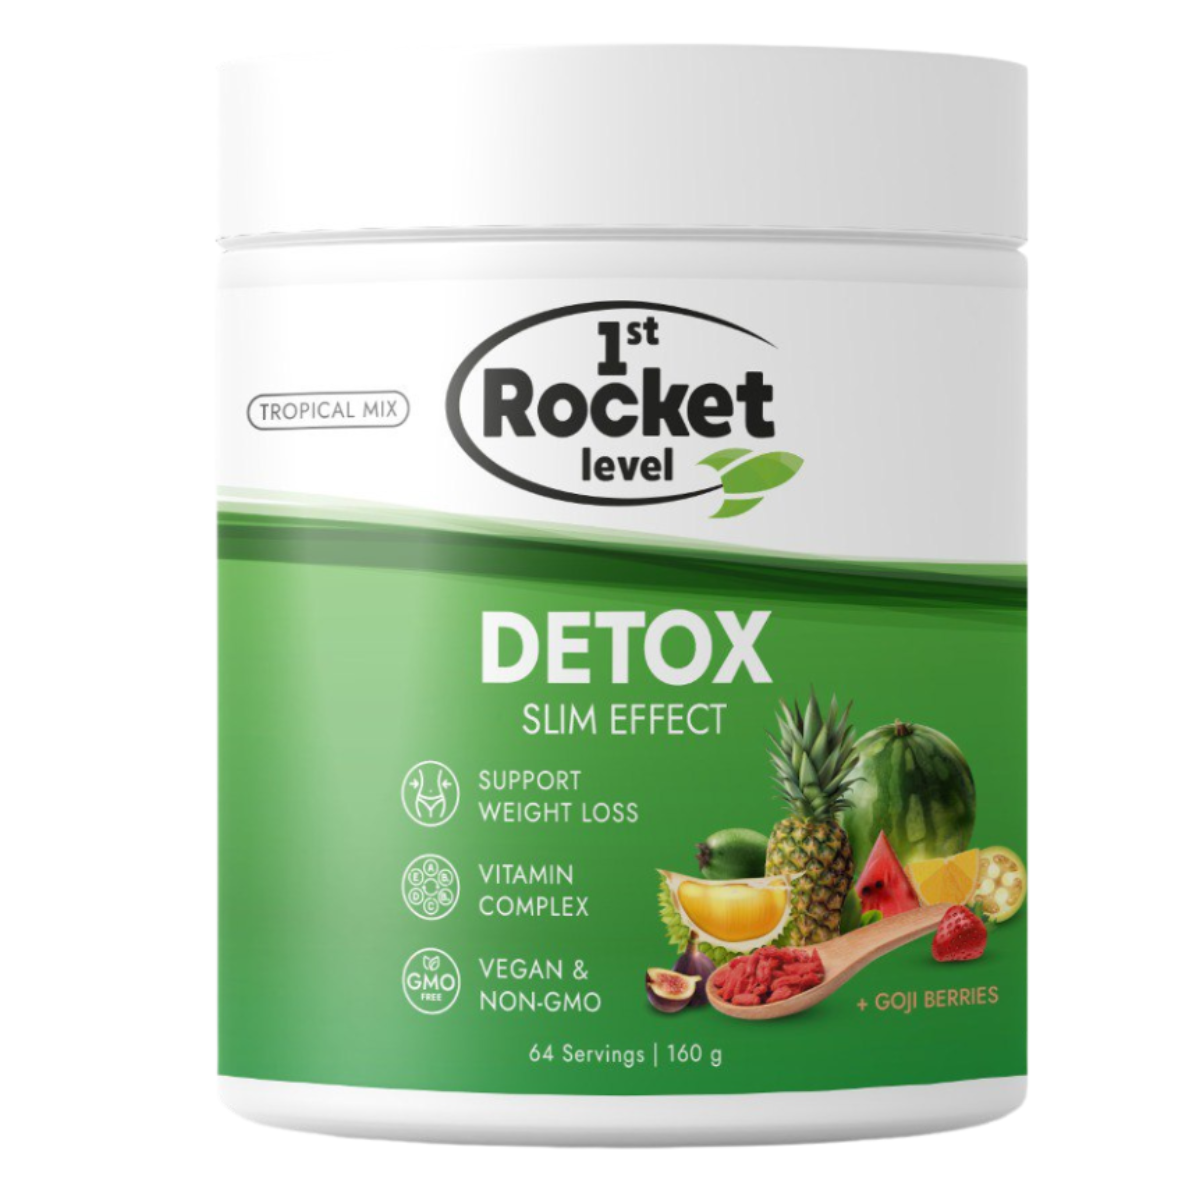 Купить Детокс «Detox Slim Effect» 1st Rocket Level Тропический микс 160 г